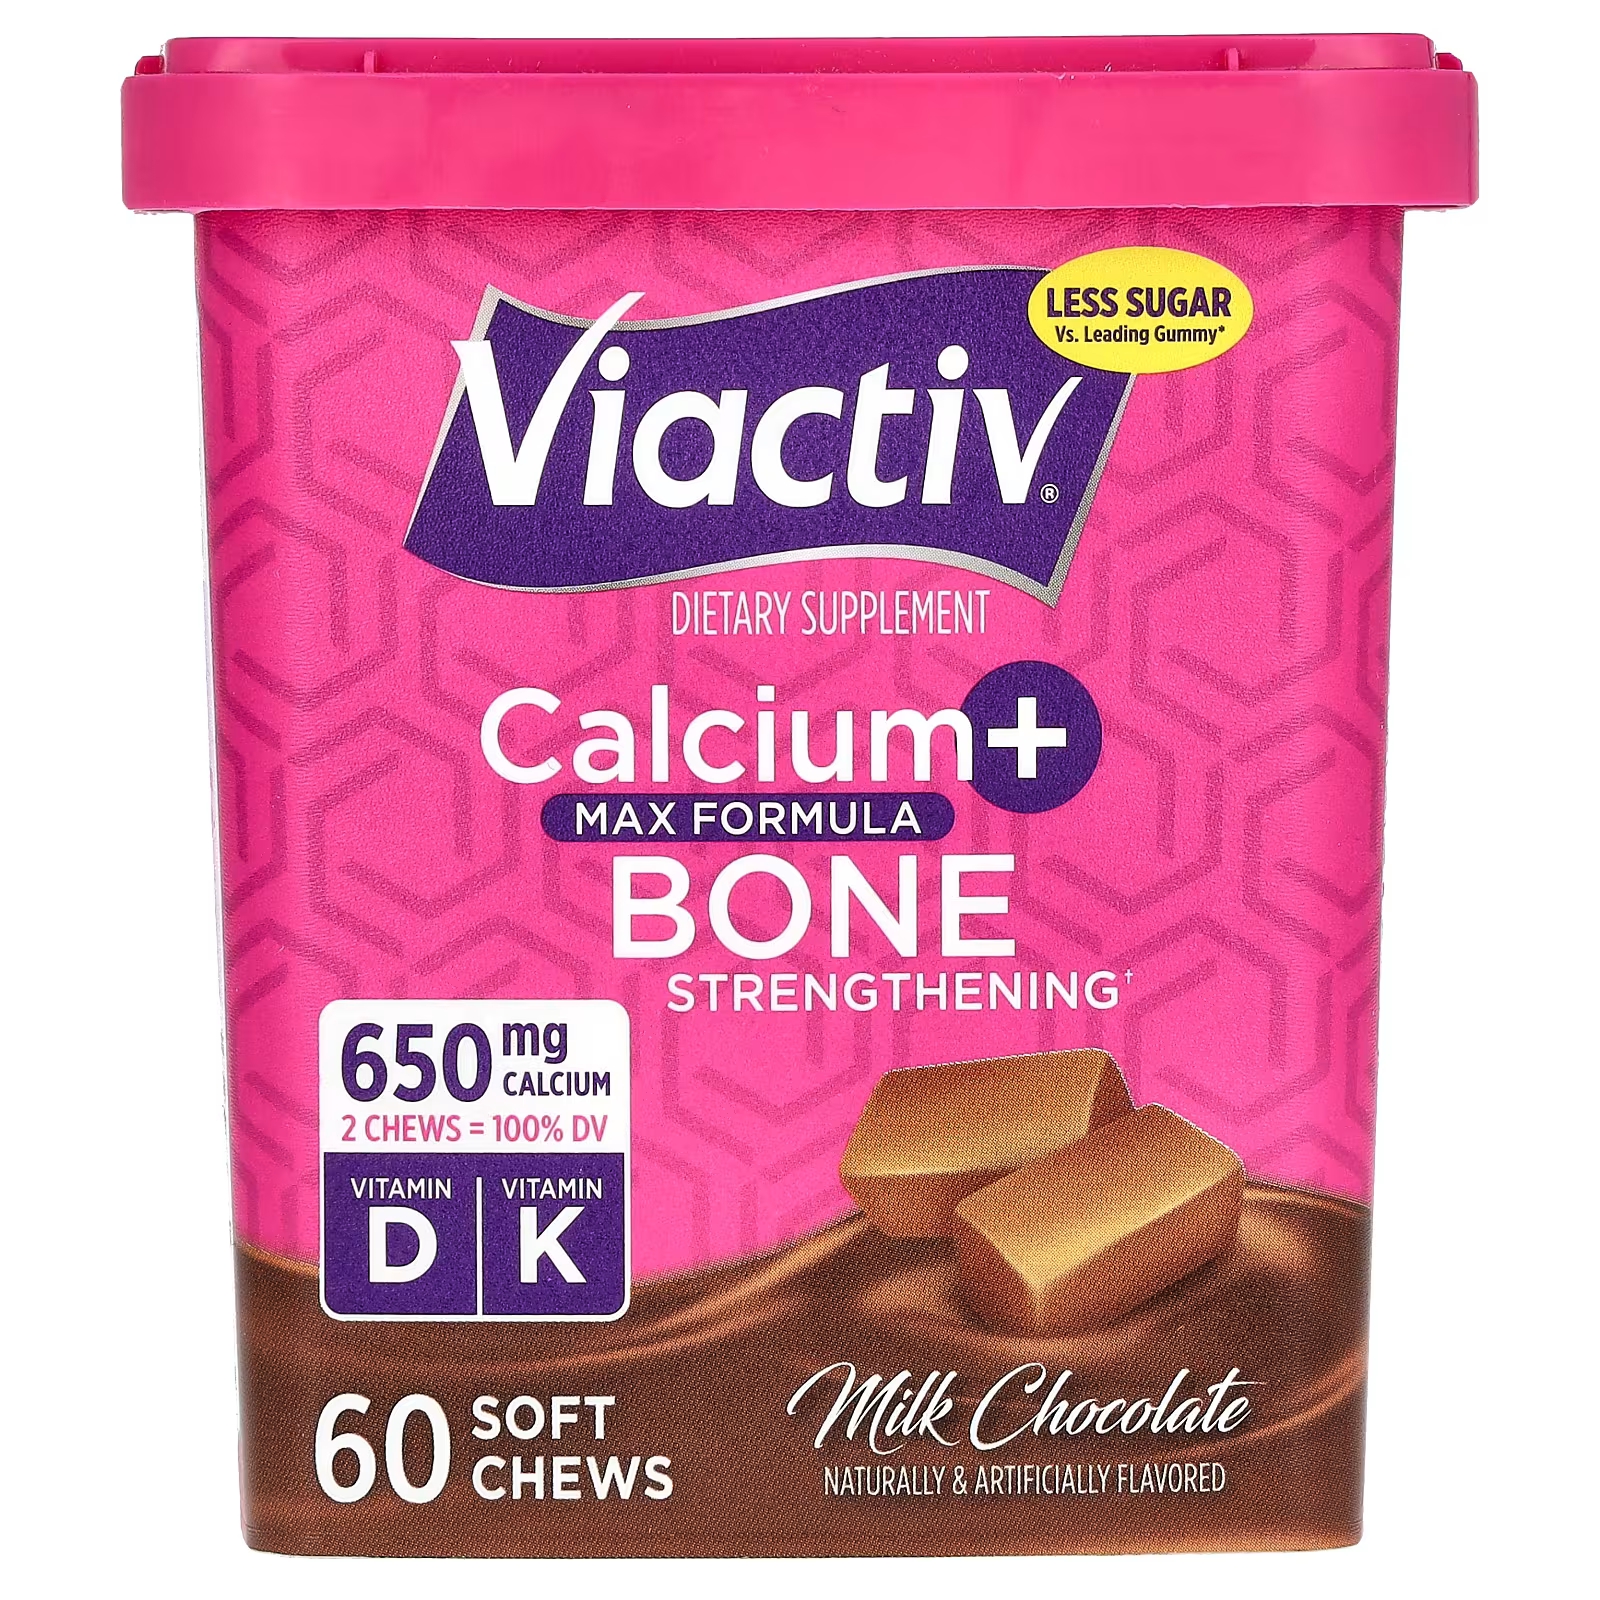 Молочный шоколад Viactiv Calcium + Bone Strengthening Max Formula, 60 мягких жевательных конфет